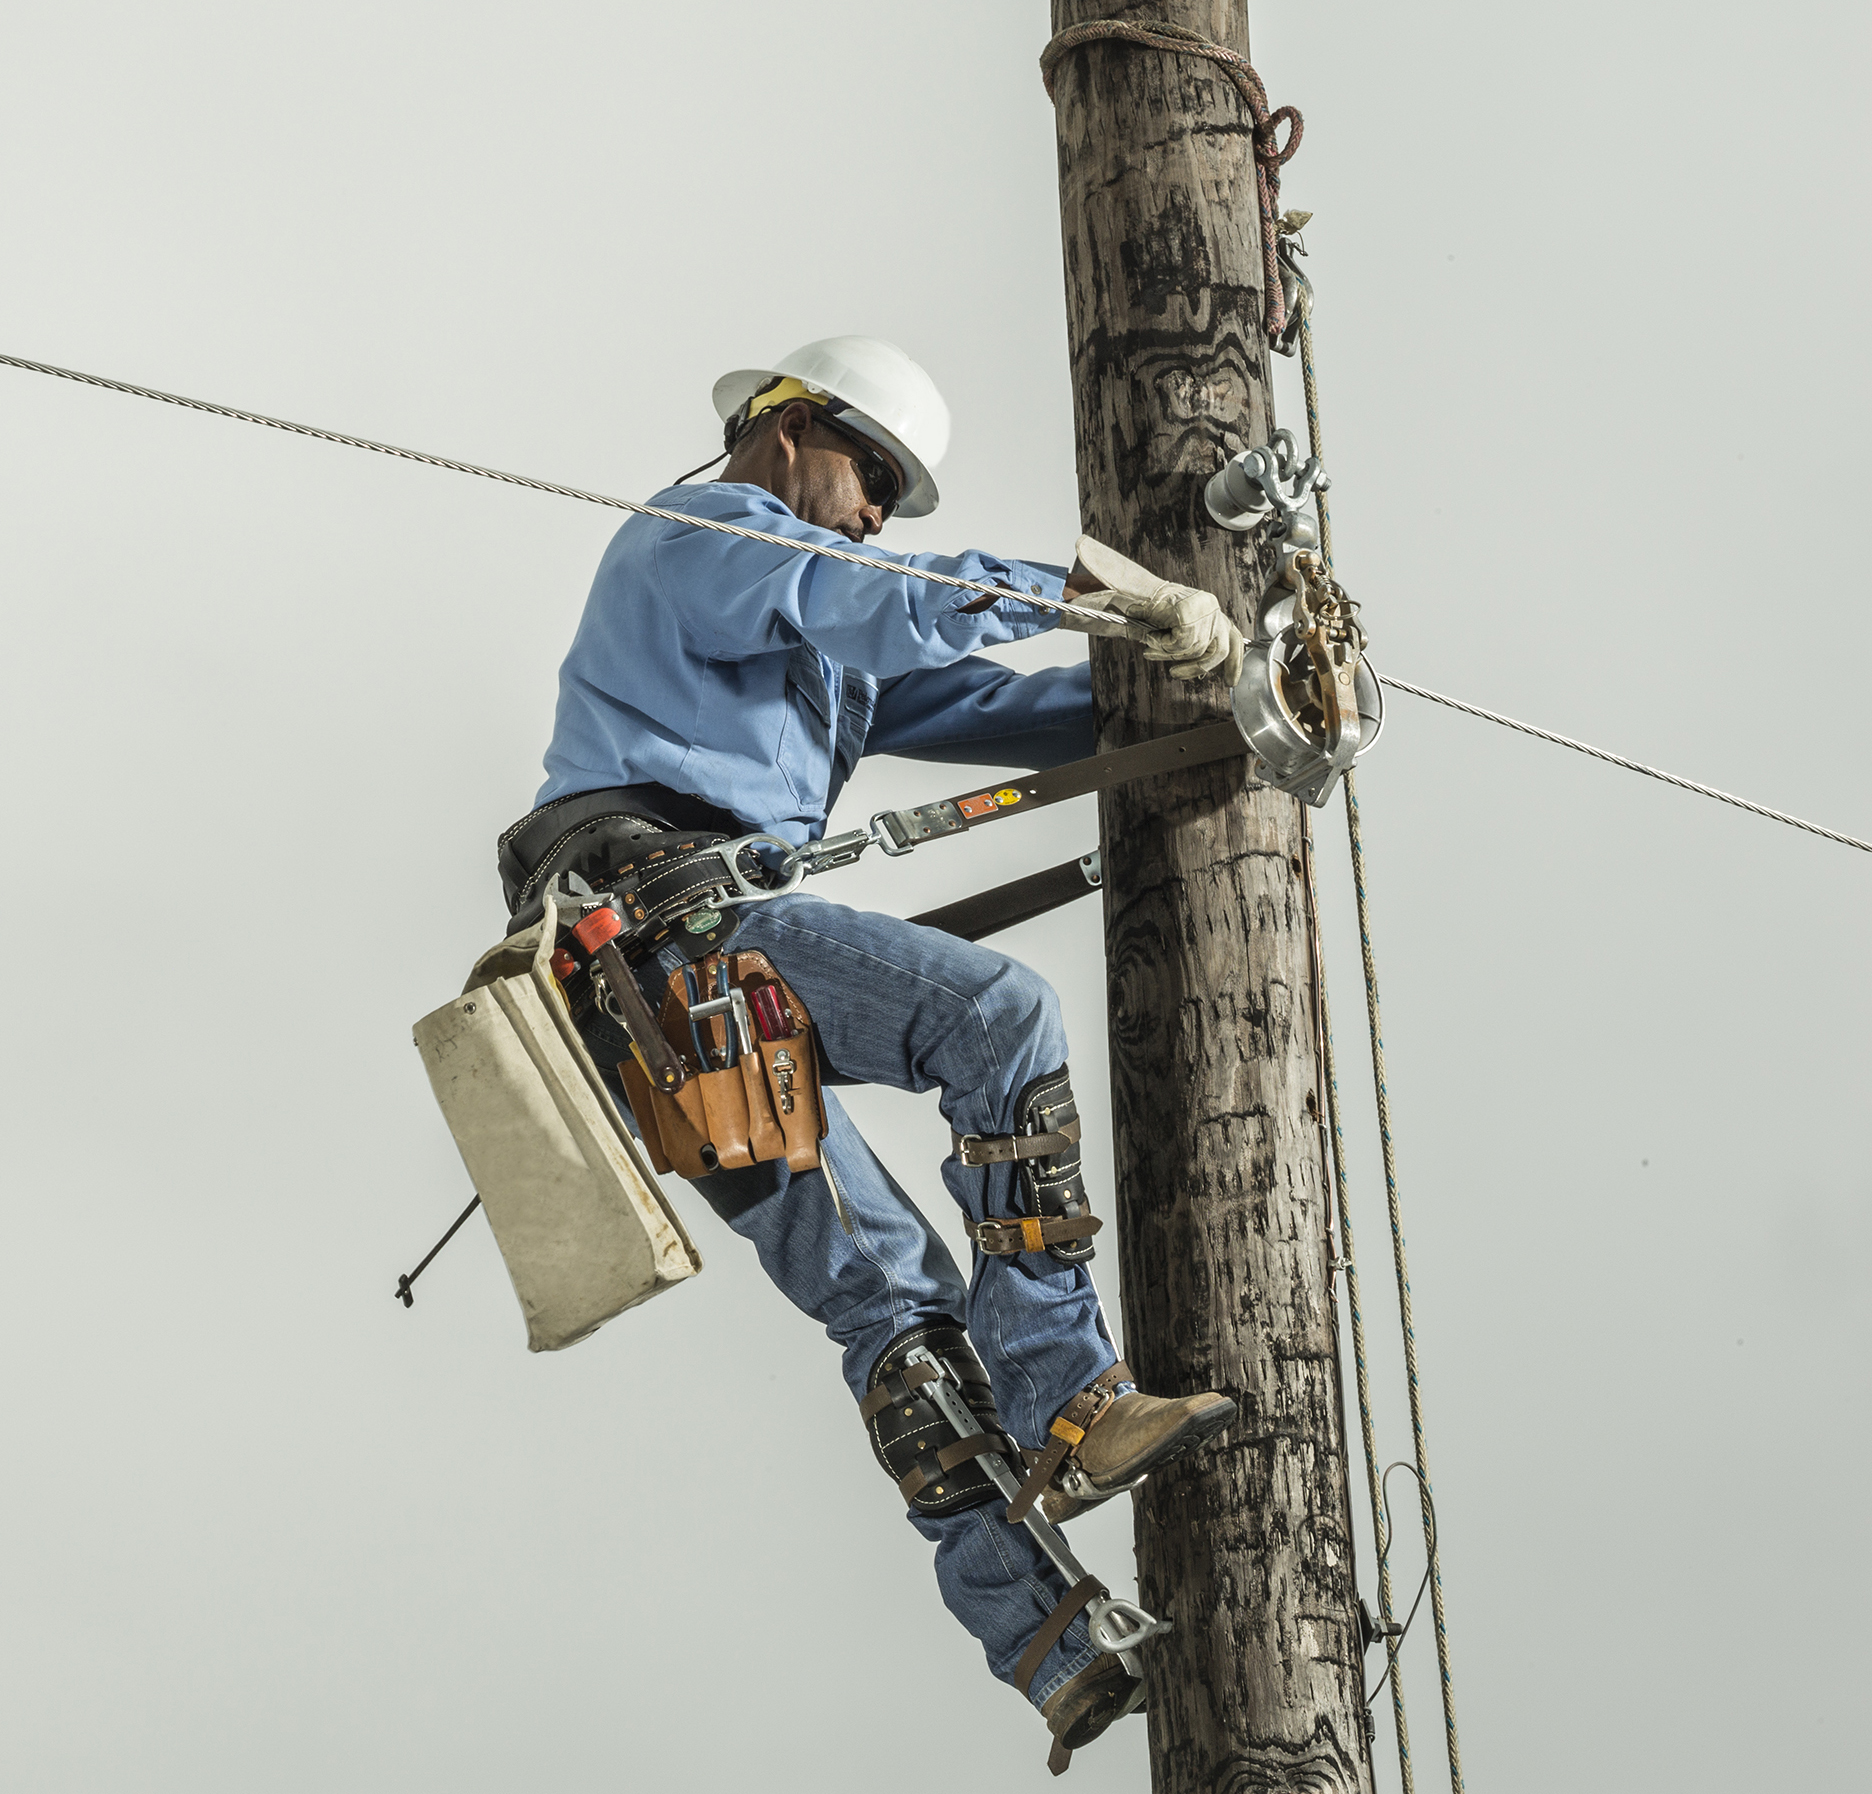 a line worker climbs a utility pole